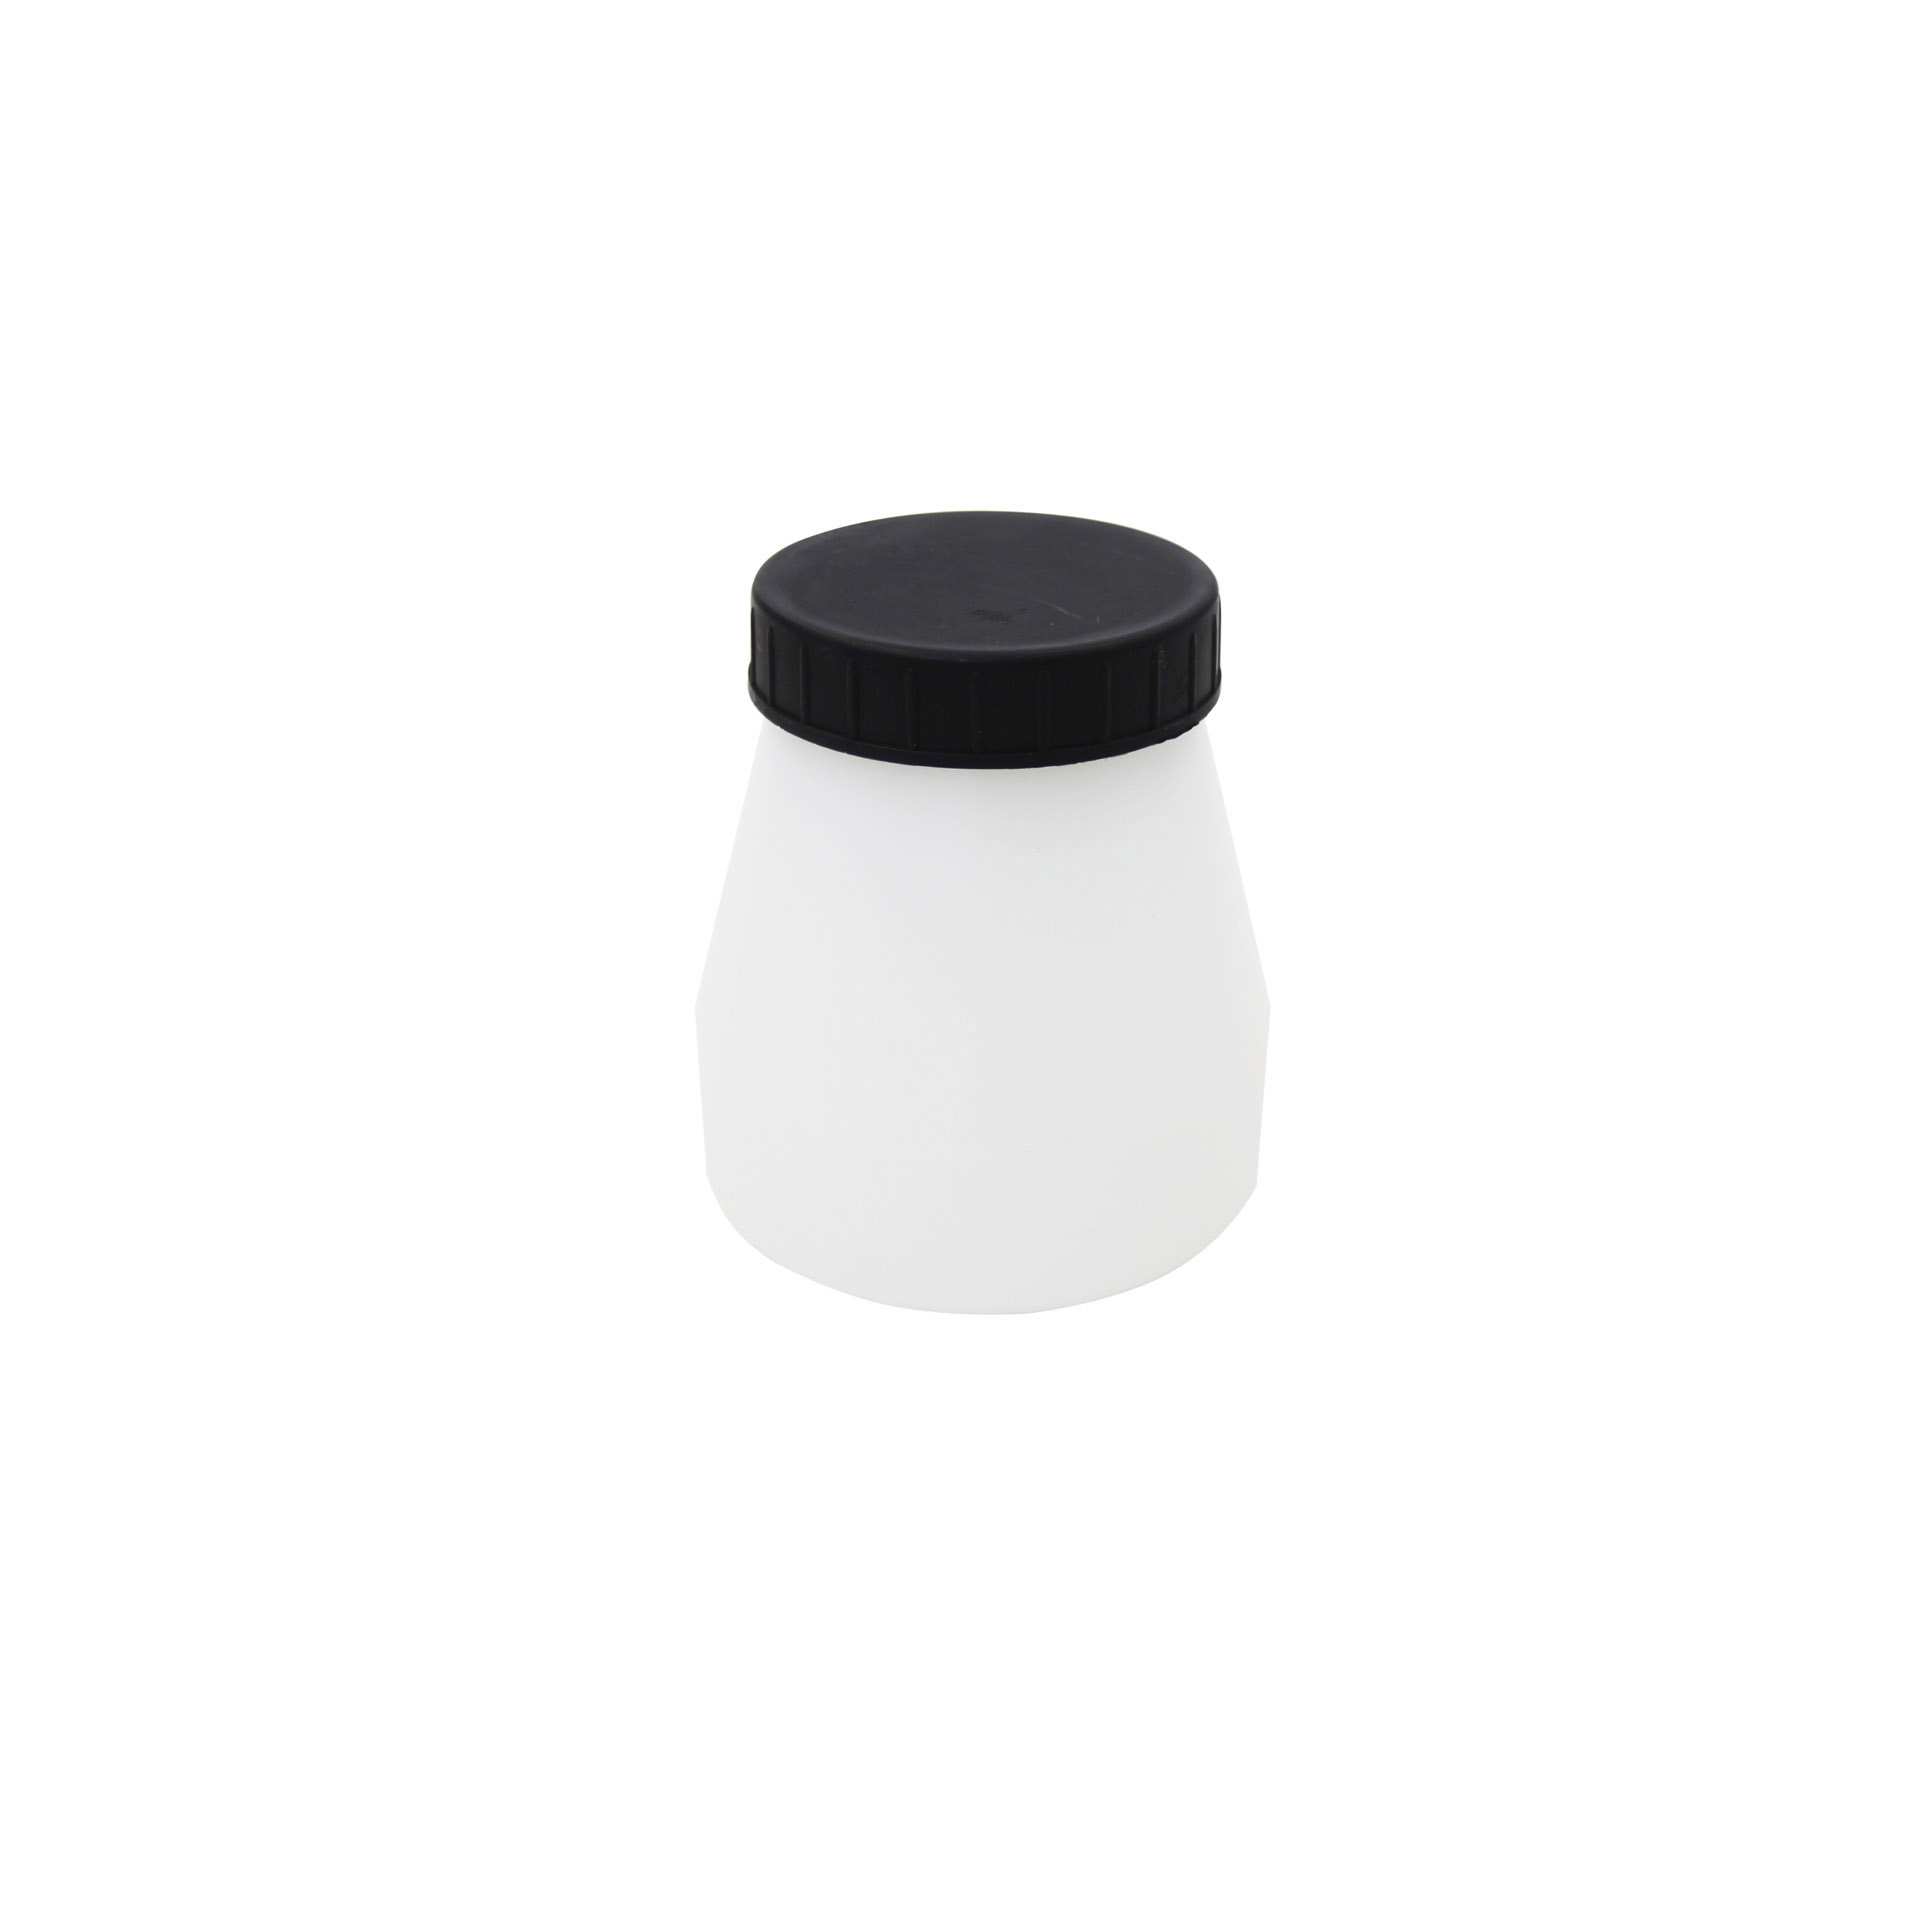 Ersatzbehälter - mit Deckel - Abm. 10,0 x 10,0 x 11,0 cm - Inhalt 0,55 l - Kunststoff - 153975-C